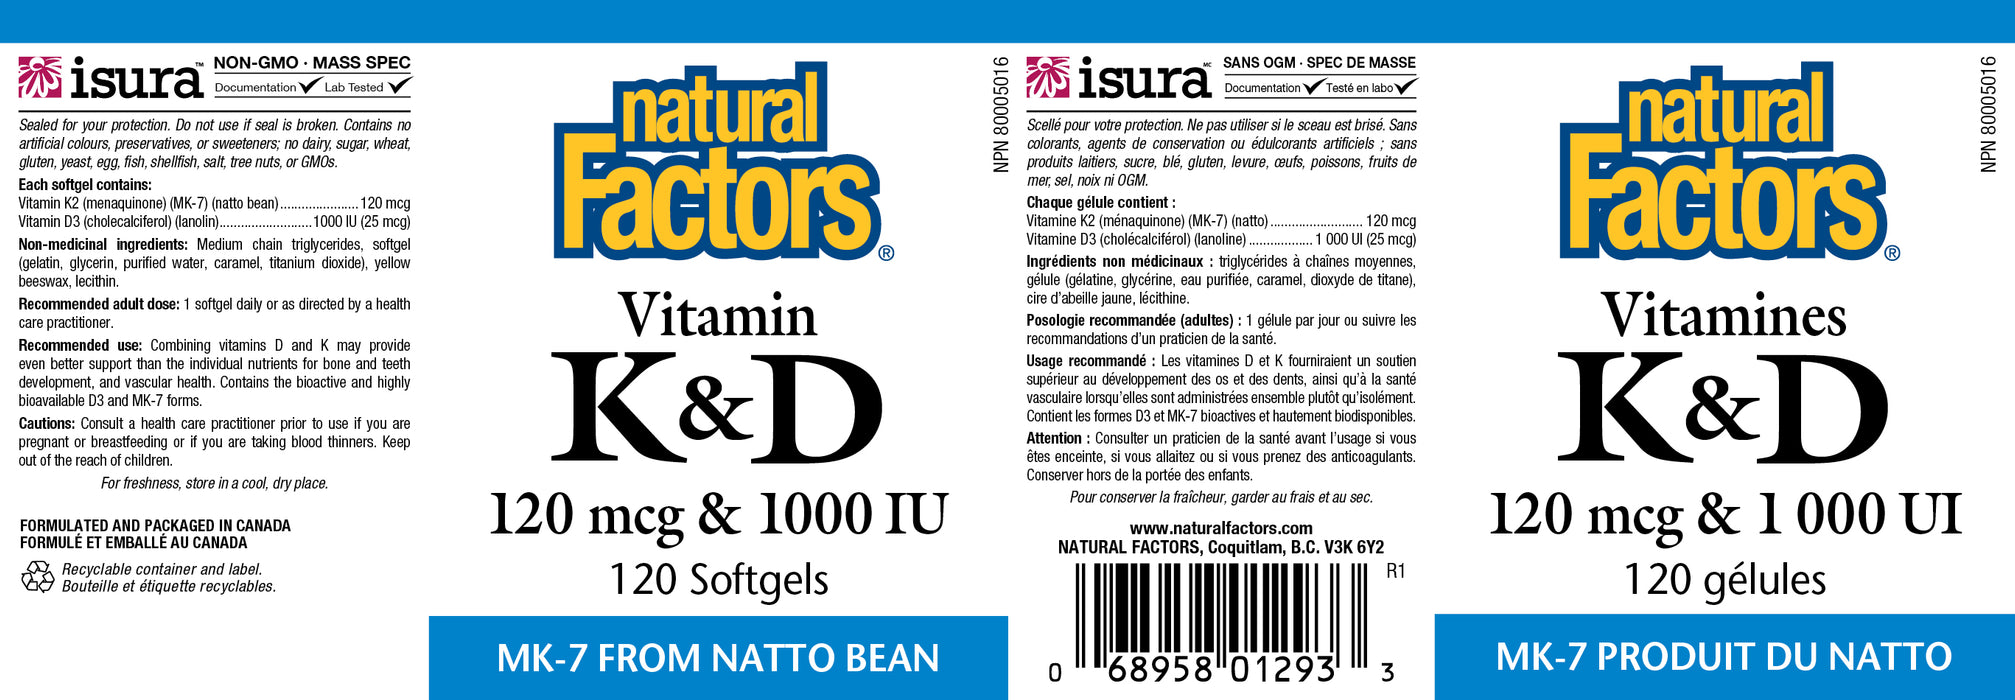 Natural Factors Vitamin K + D - 120mcg/1000iu - MK7 from Natto Bean 120 Gelatin Softgels